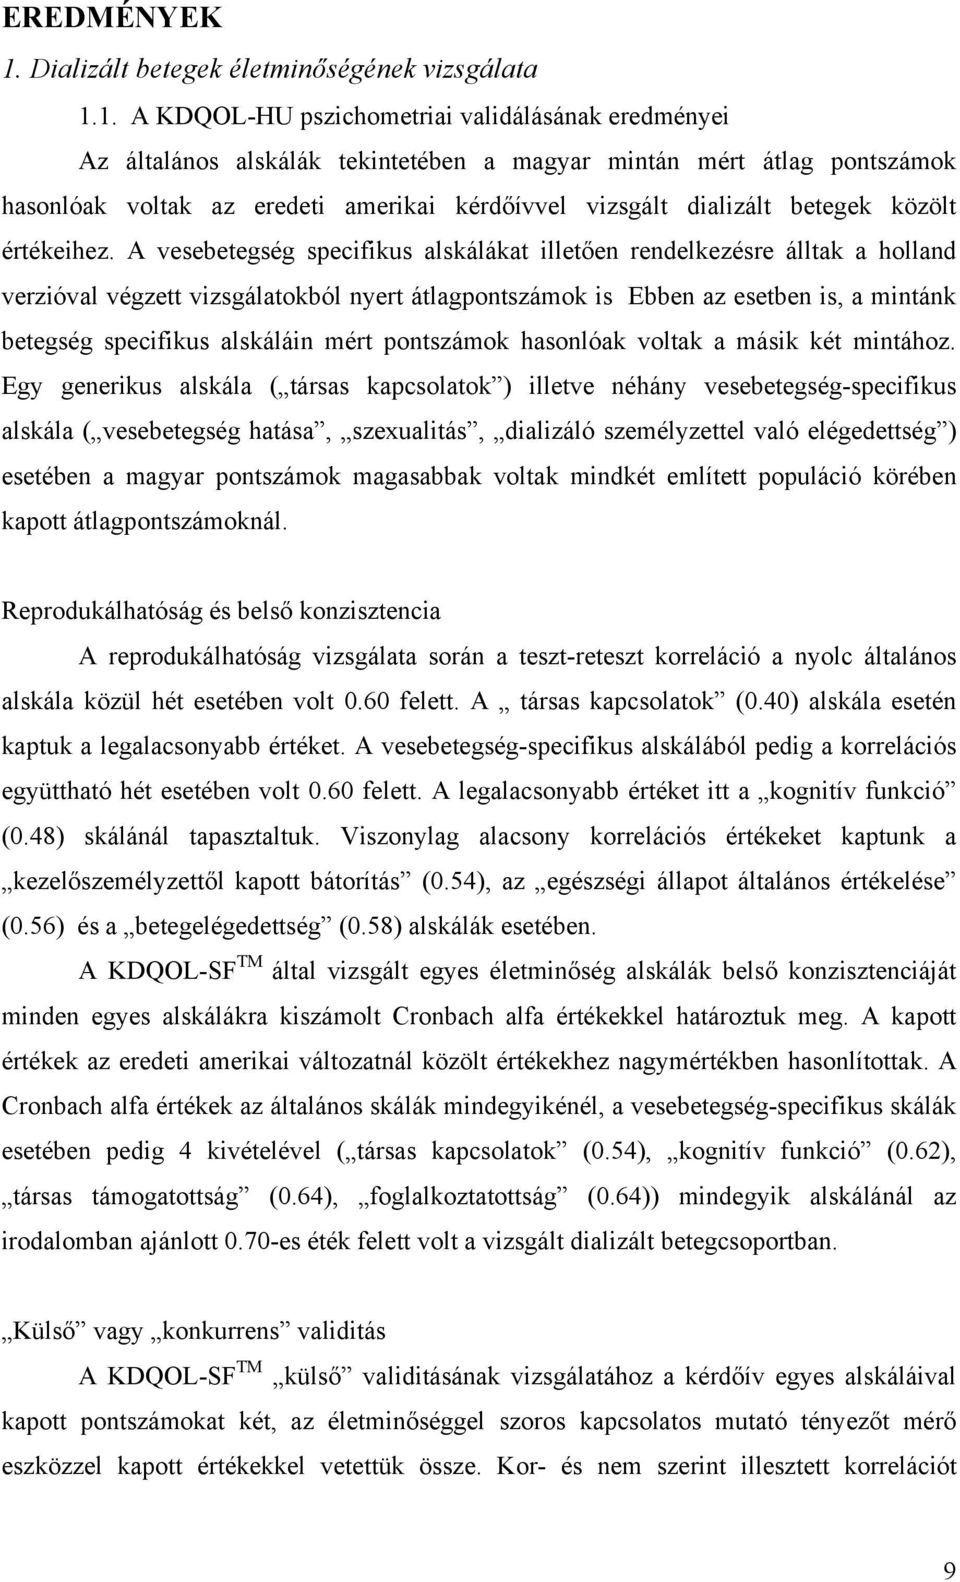 1. A KDQOL-HU pszichometriai validálásának eredményei Az általános alskálák tekintetében a magyar mintán mért átlag pontszámok hasonlóak voltak az eredeti amerikai kérdőívvel vizsgált dializált